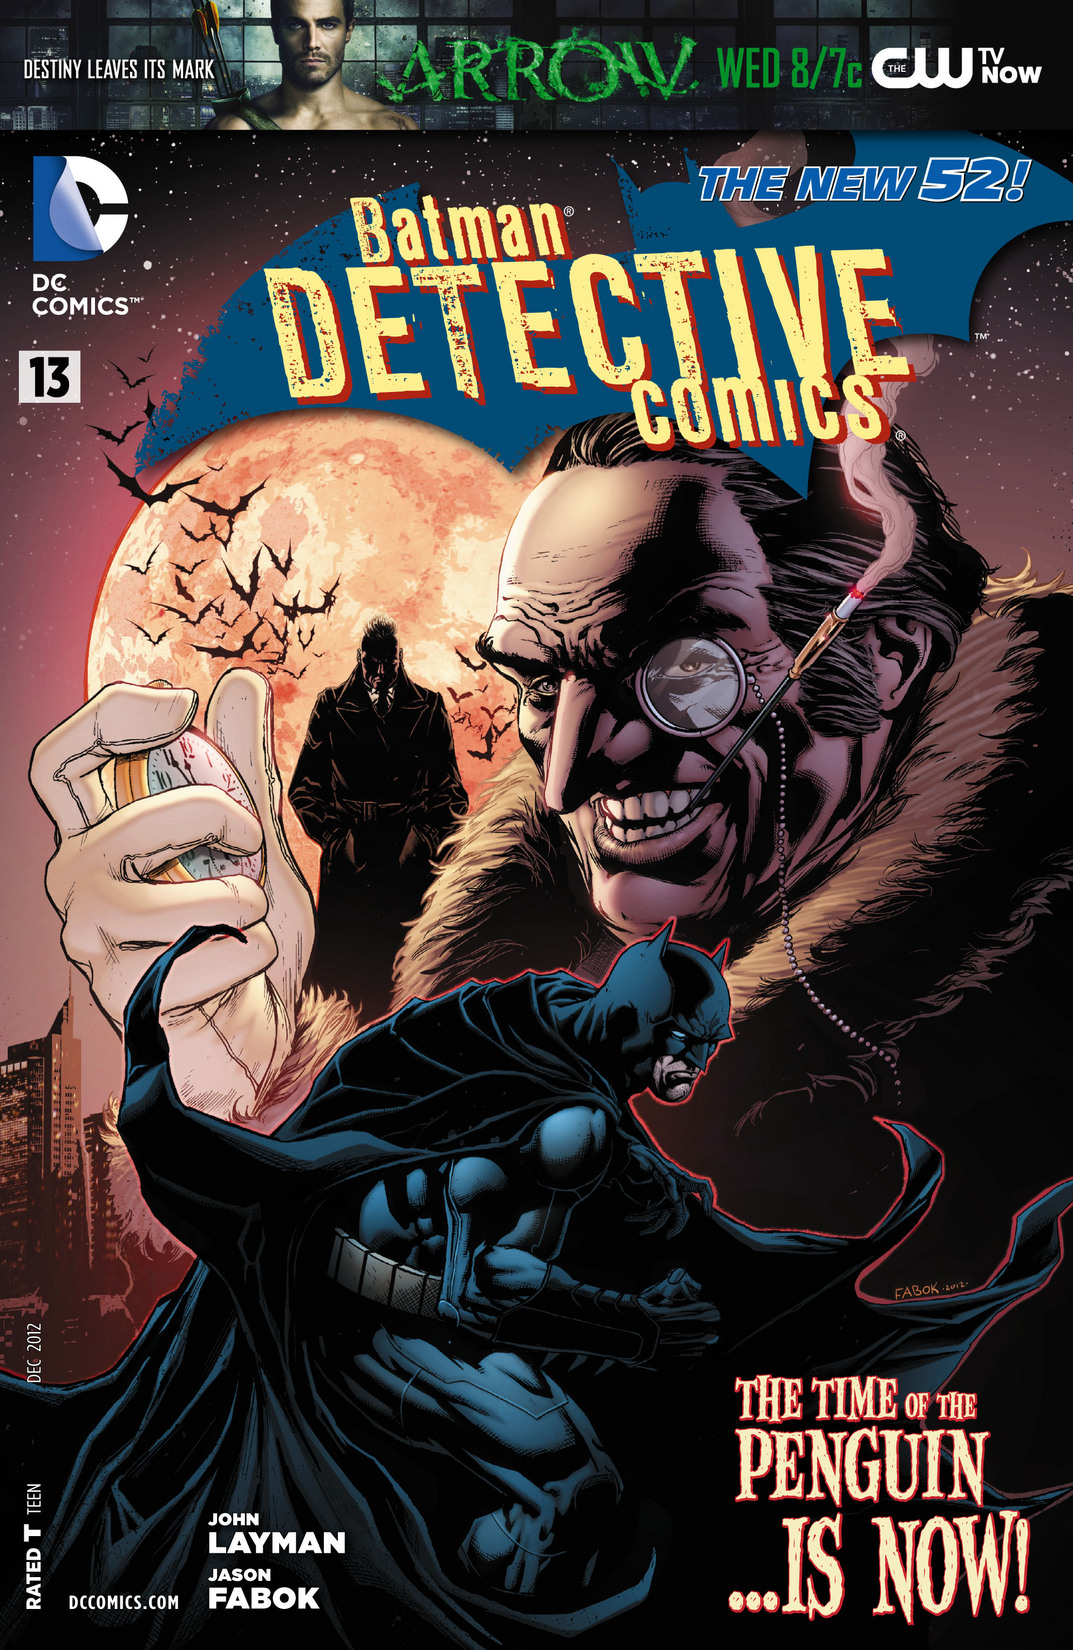 Detective Comics Vol. 2 #13